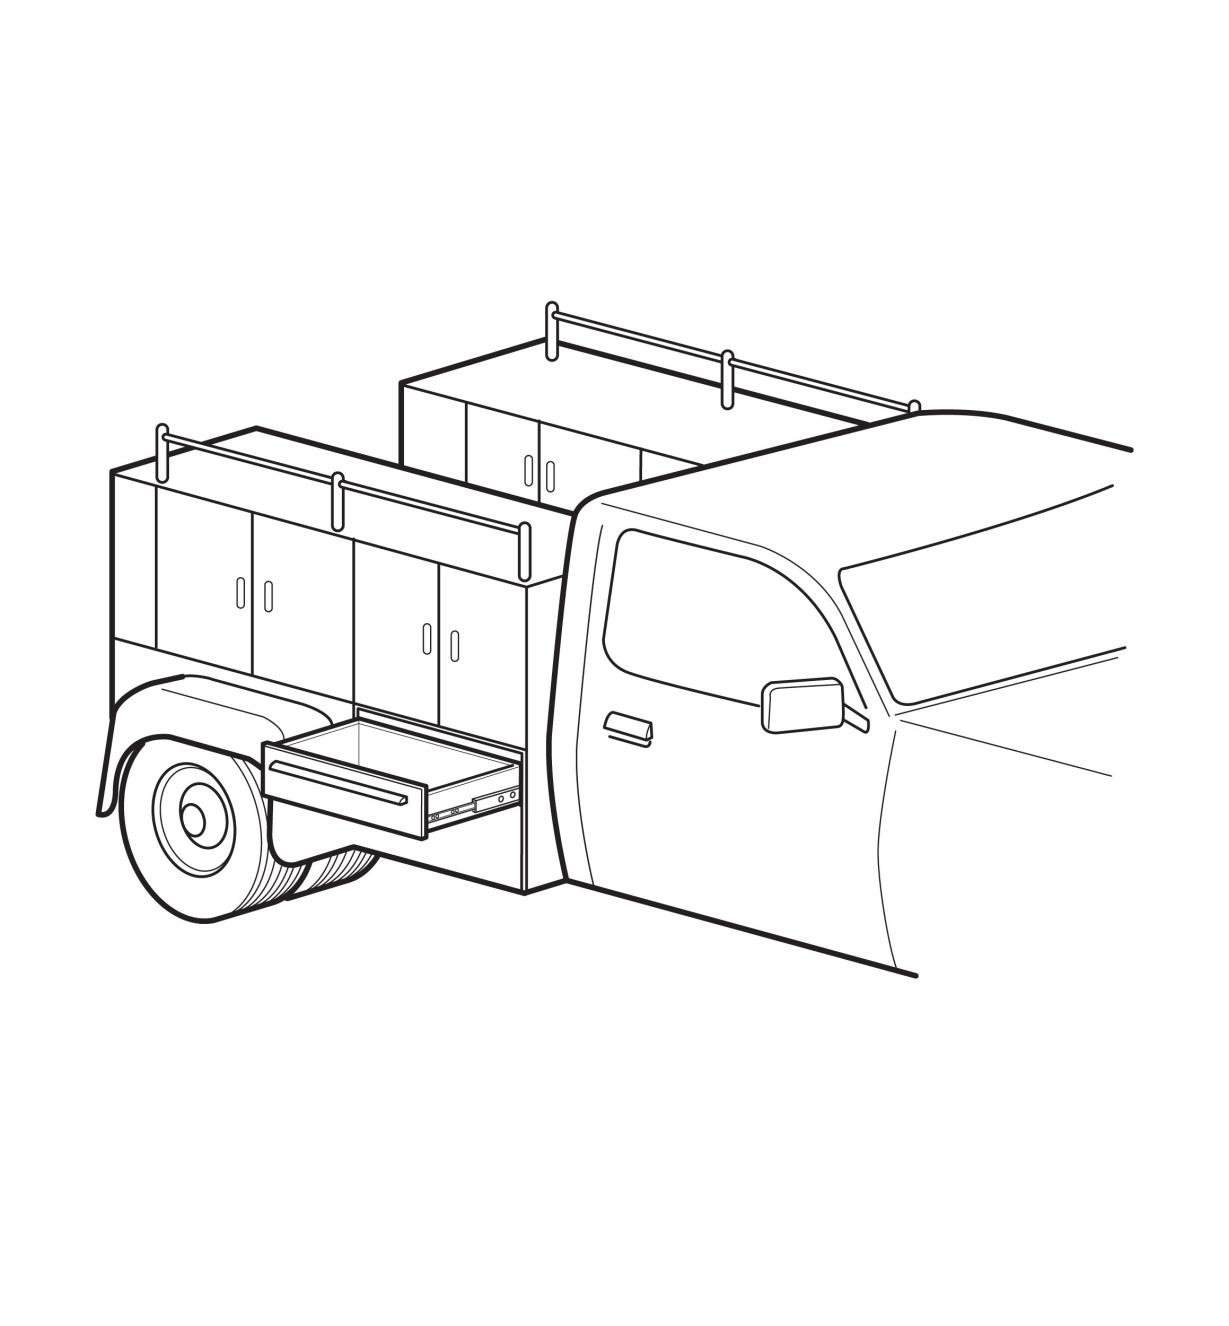 Dessin d'un coffre de camion avec un tiroir ouvert monté sur des coulisses ultrarobustes